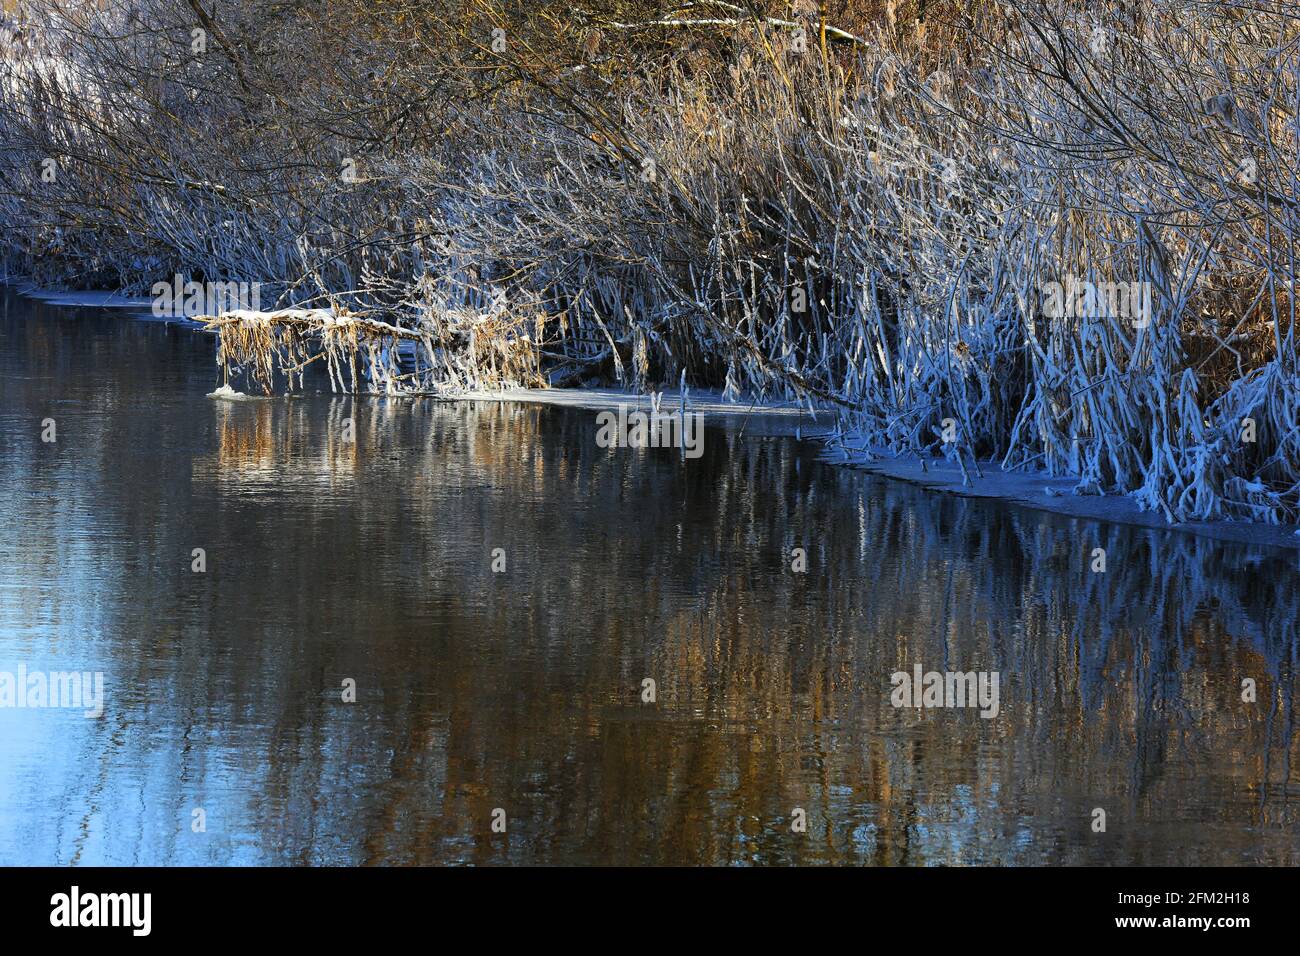 Winterlicher Fluss mit Schnee und Eis und Bäumen und Pflanzen in eisiger Kälte aufgenommen! Standort Hahnbach bei Amberg Oberpfalz Stock Photo